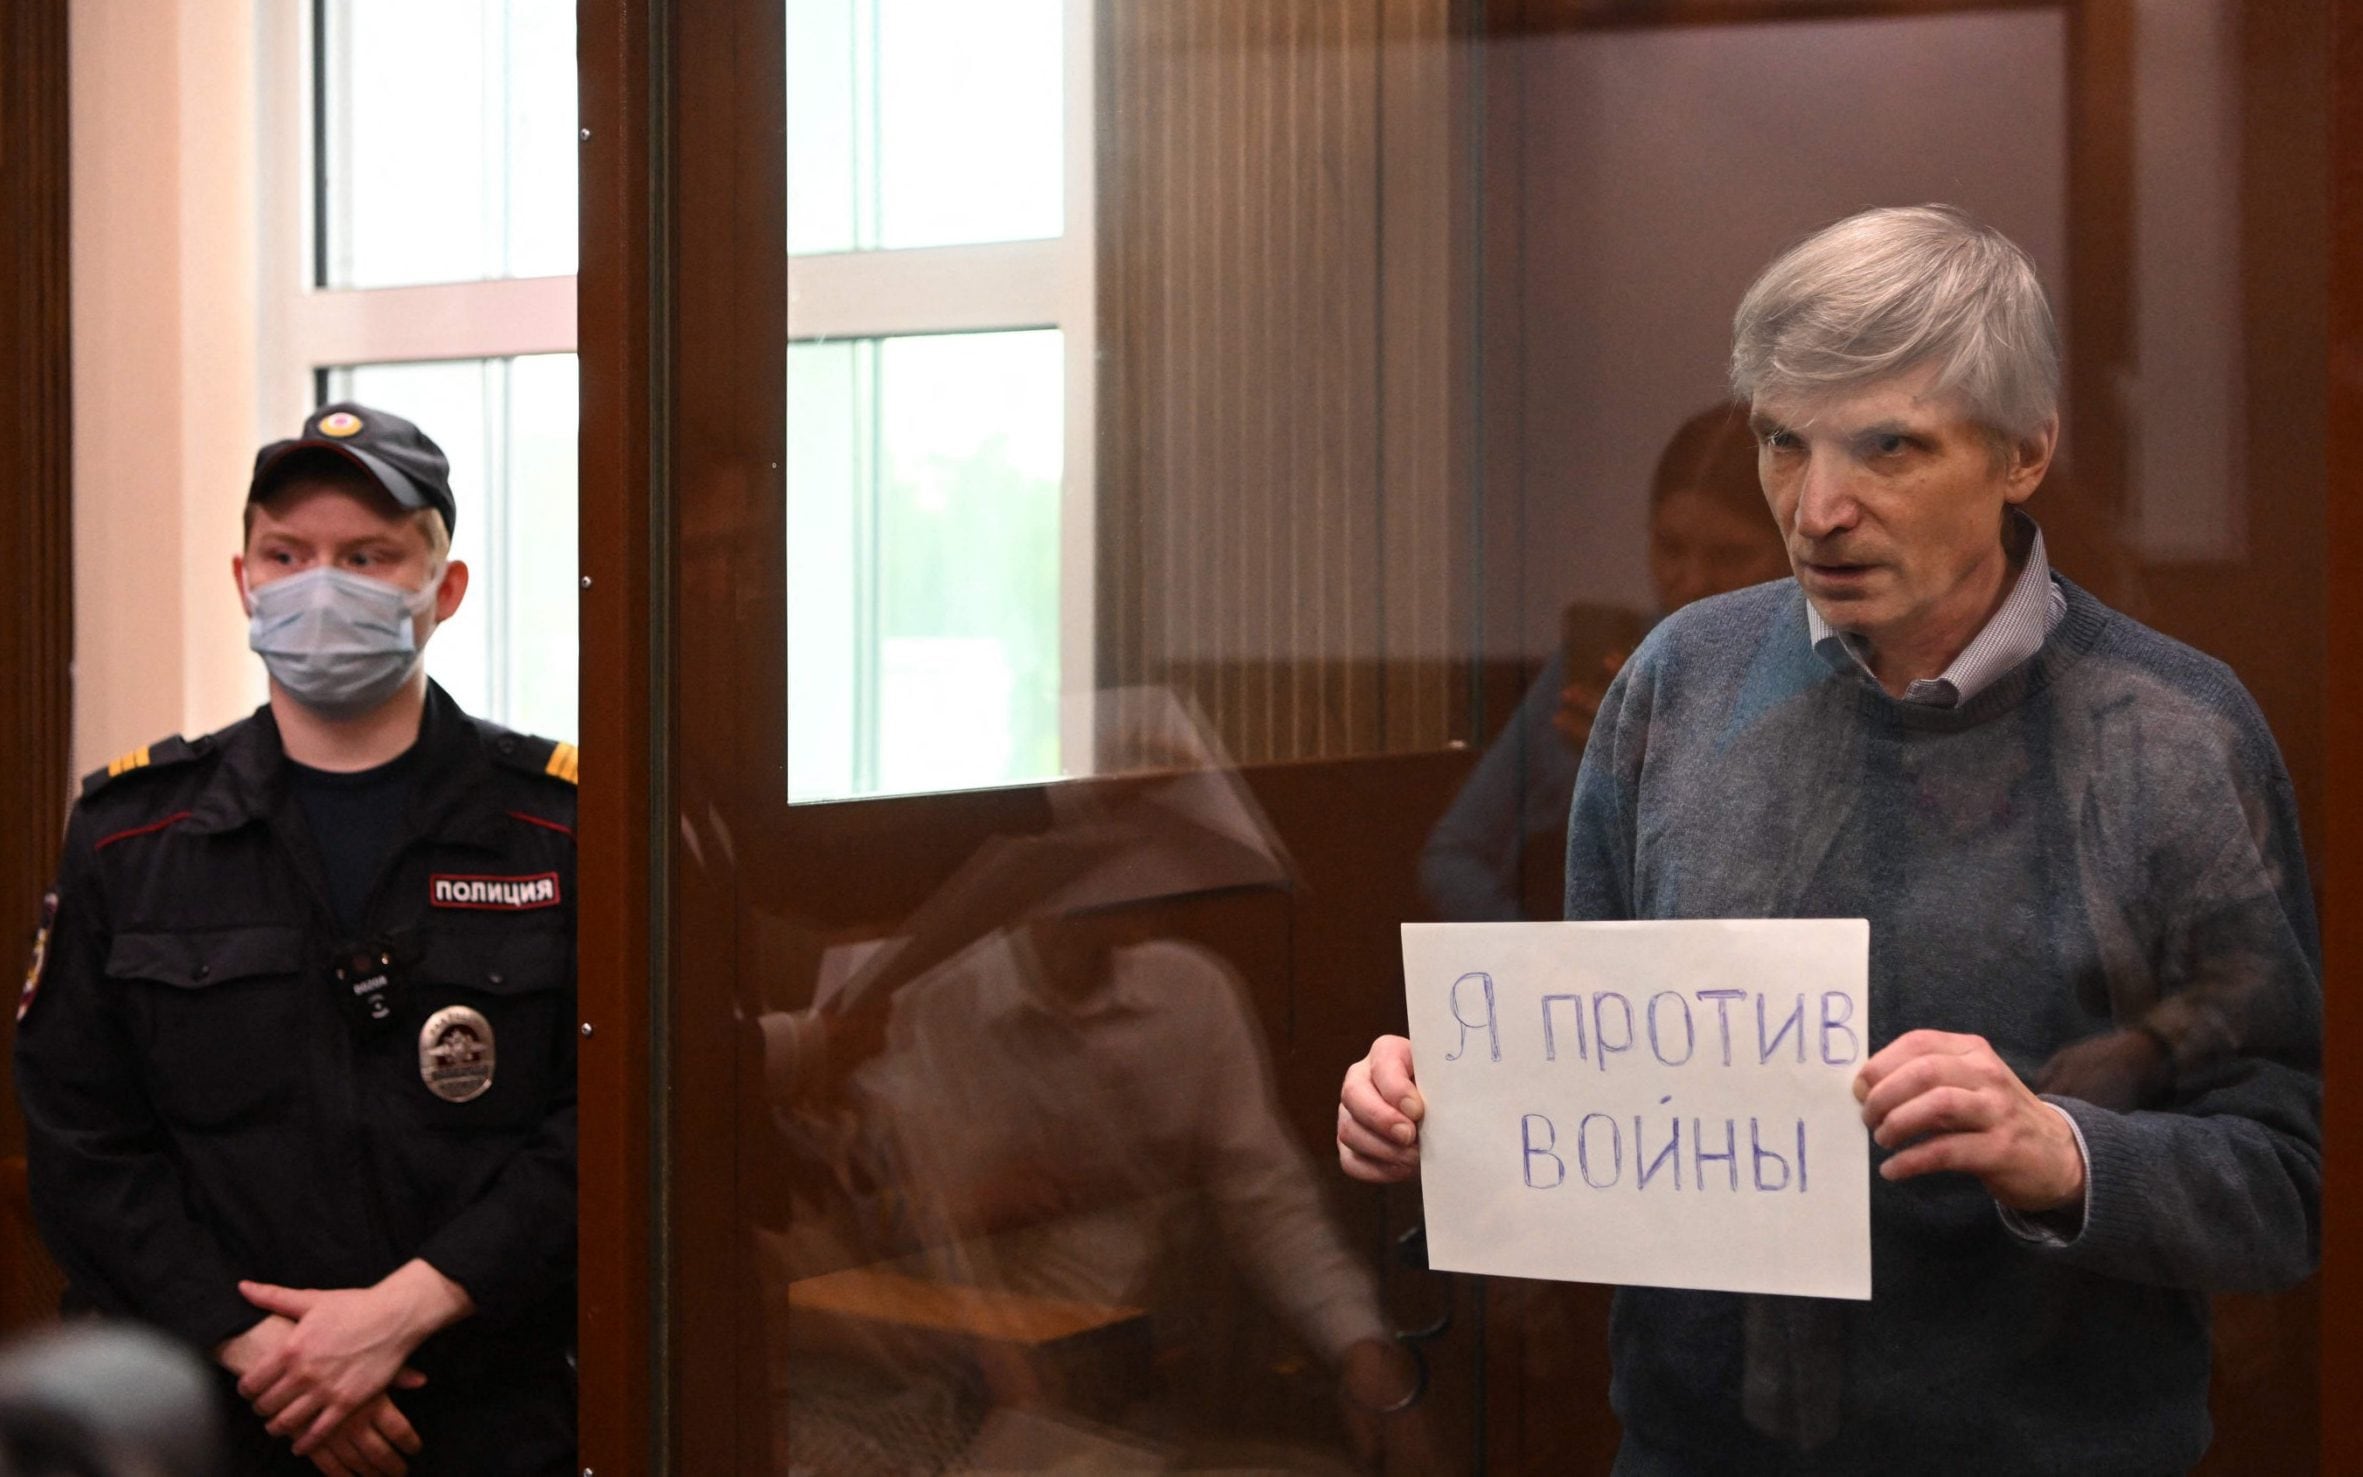 Alexei Gorinov in gravi condizioni: è in cella per aver criticato la guerra di Putin all'Ucraina